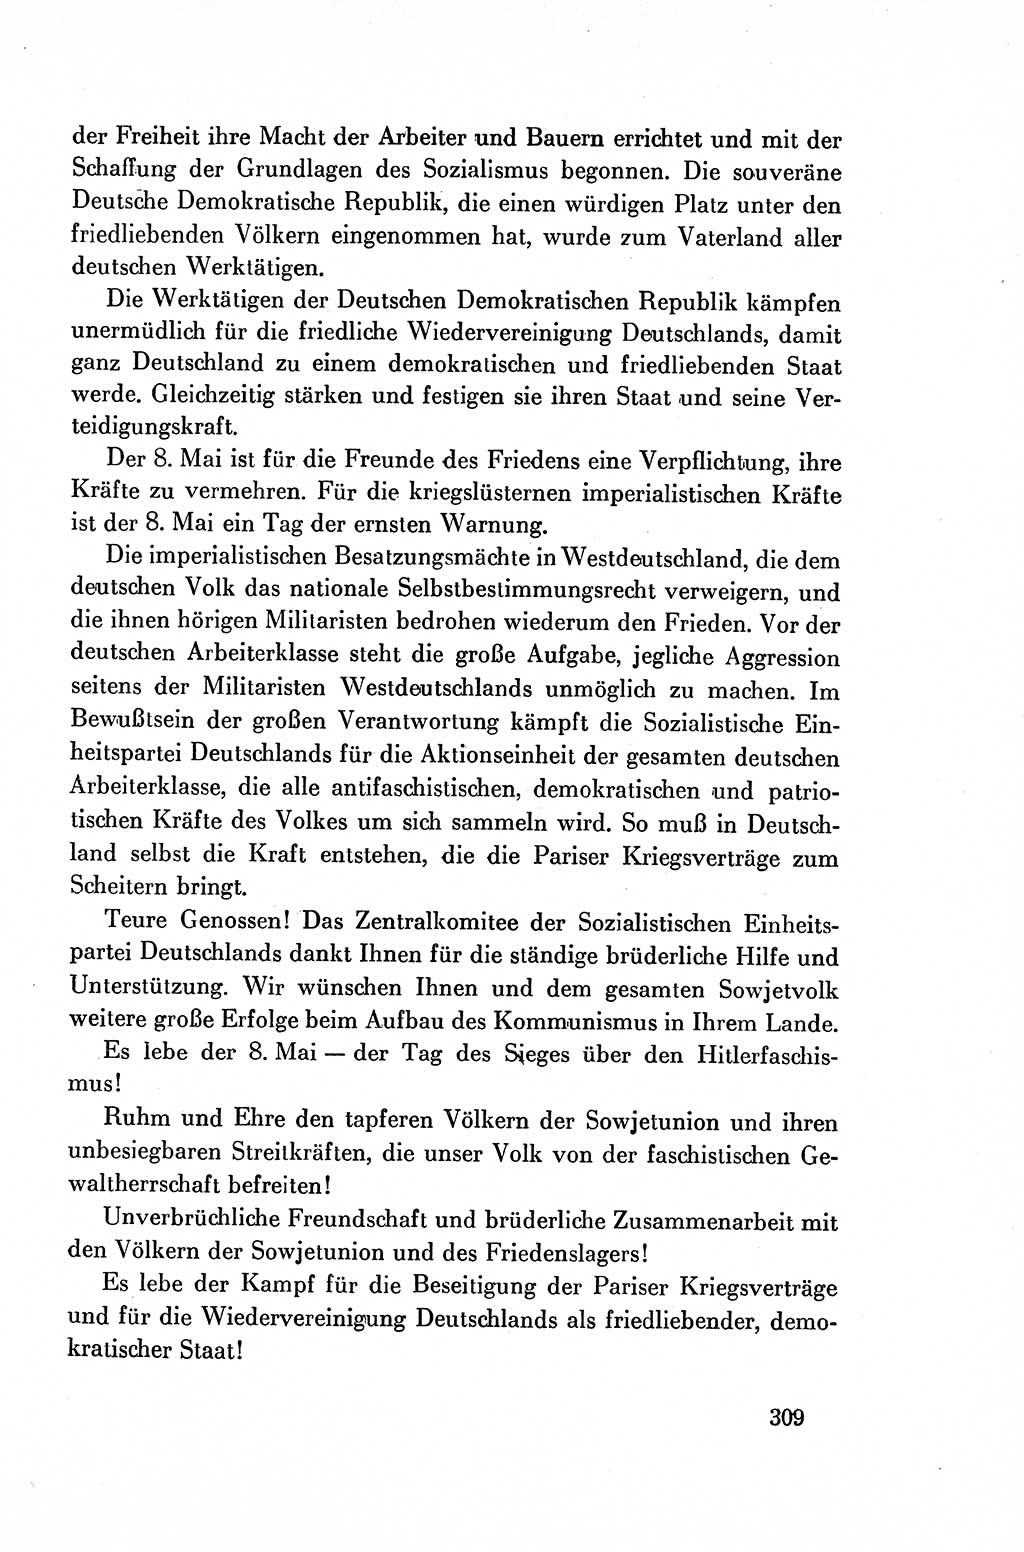 Dokumente der Sozialistischen Einheitspartei Deutschlands (SED) [Deutsche Demokratische Republik (DDR)] 1954-1955, Seite 309 (Dok. SED DDR 1954-1955, S. 309)